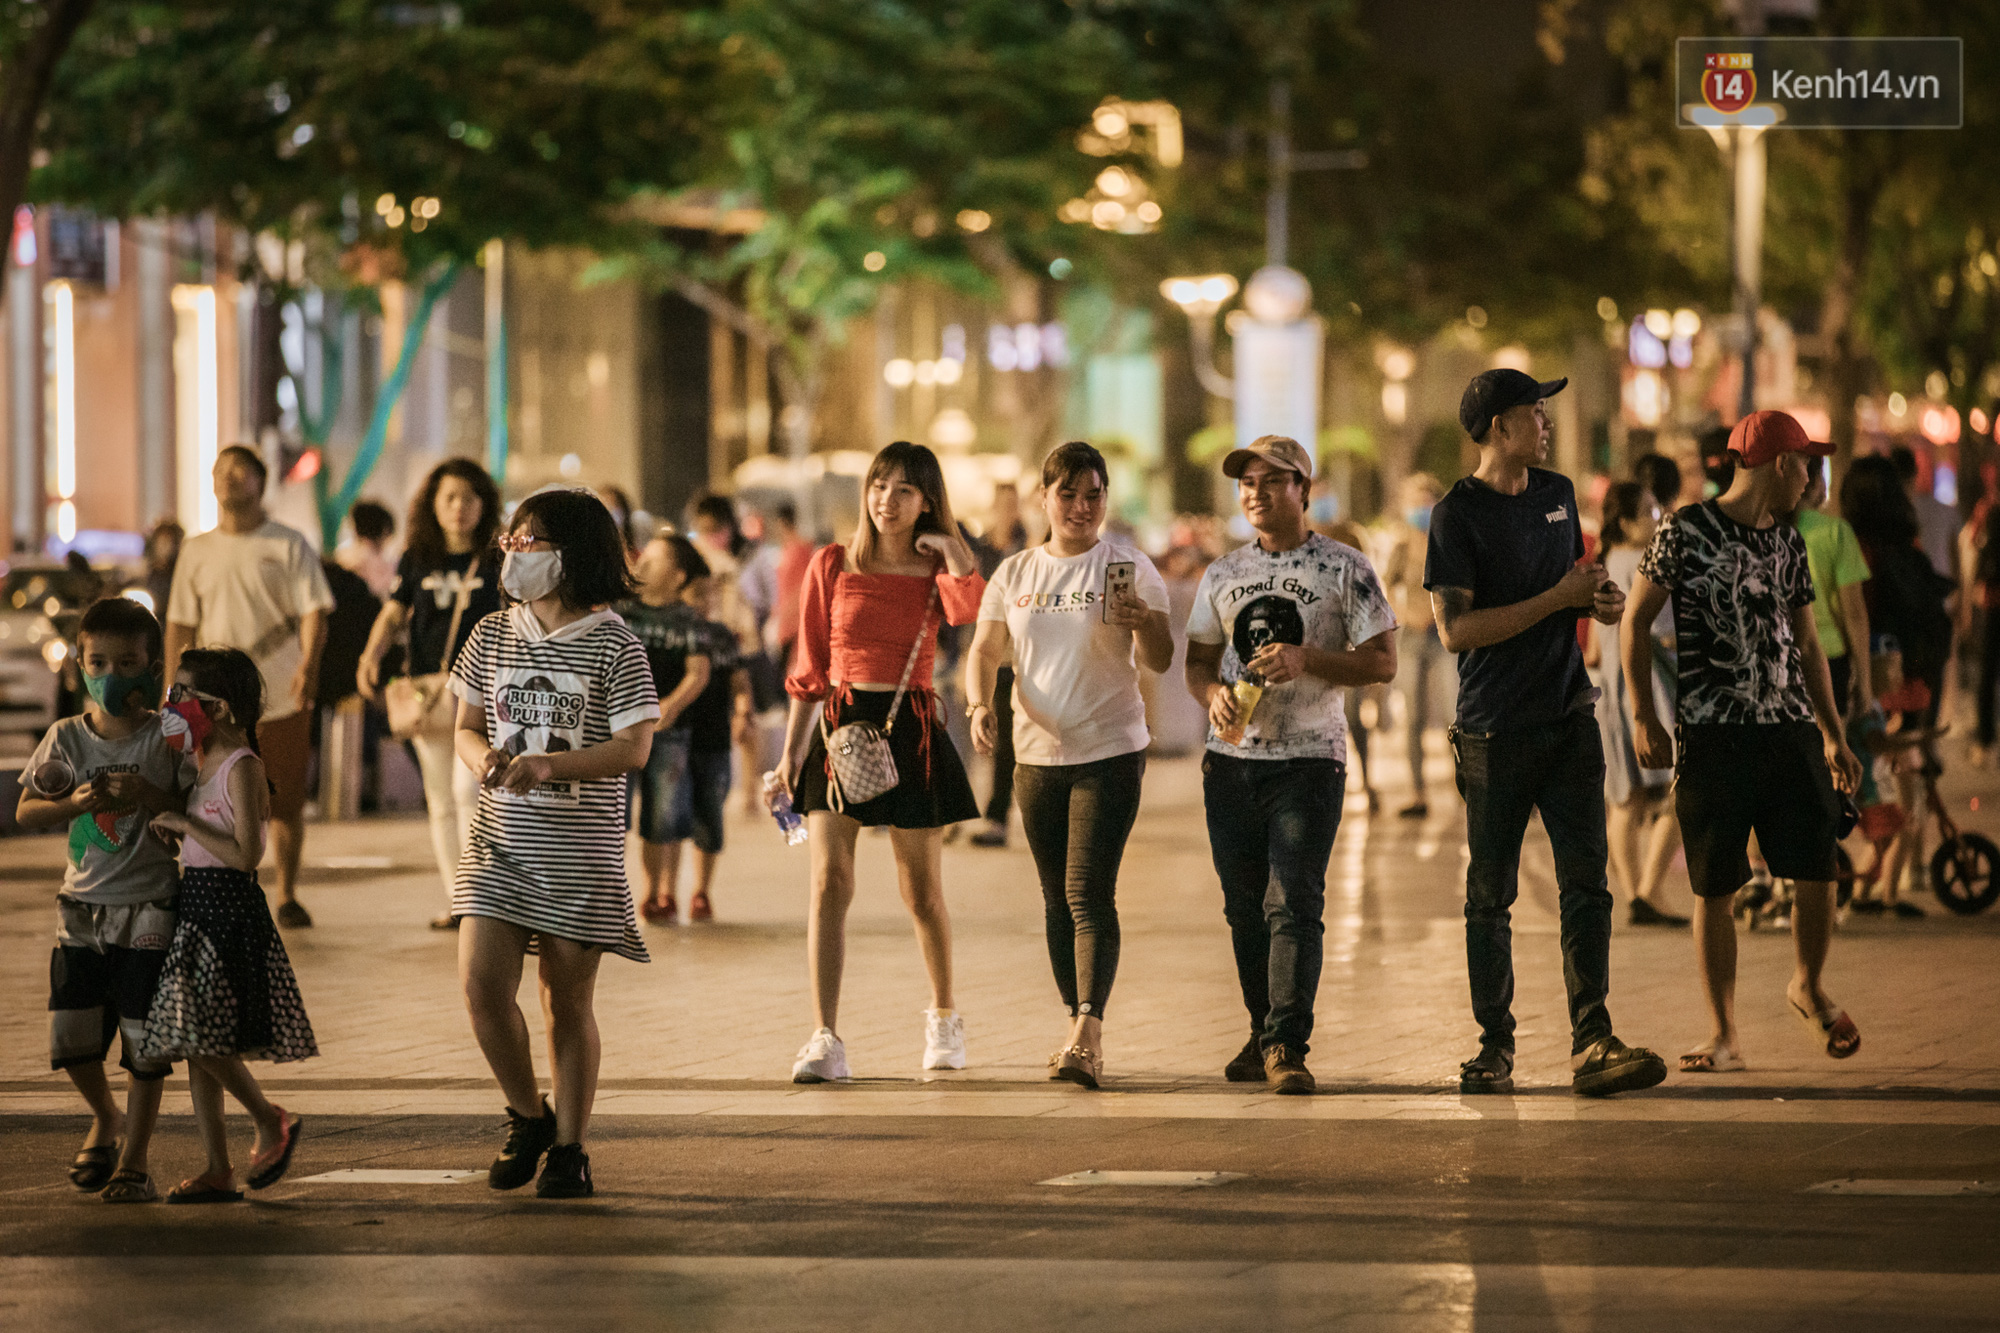 Sài Gòn nhộn nhịp trong buổi tối nghỉ lễ đầu tiên: Khu vực trung tâm dần trở nên đông đúc, nhiều người lo sợ vẫn “kè kè” chiếc khẩu trang bên mình - Ảnh 5.